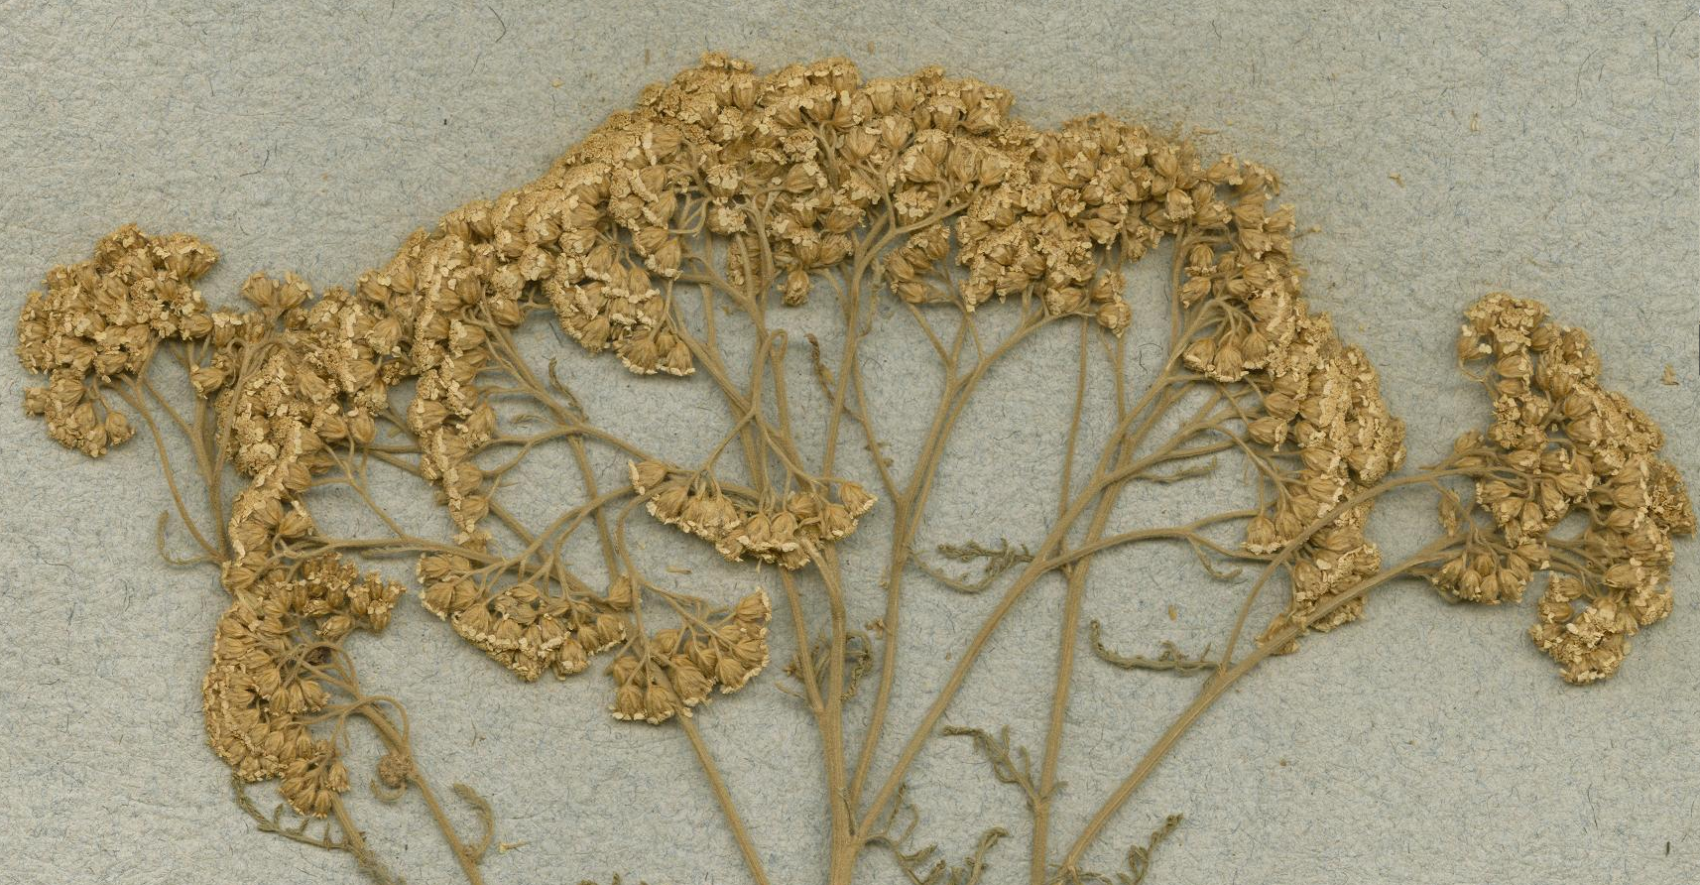 dried plant specimen